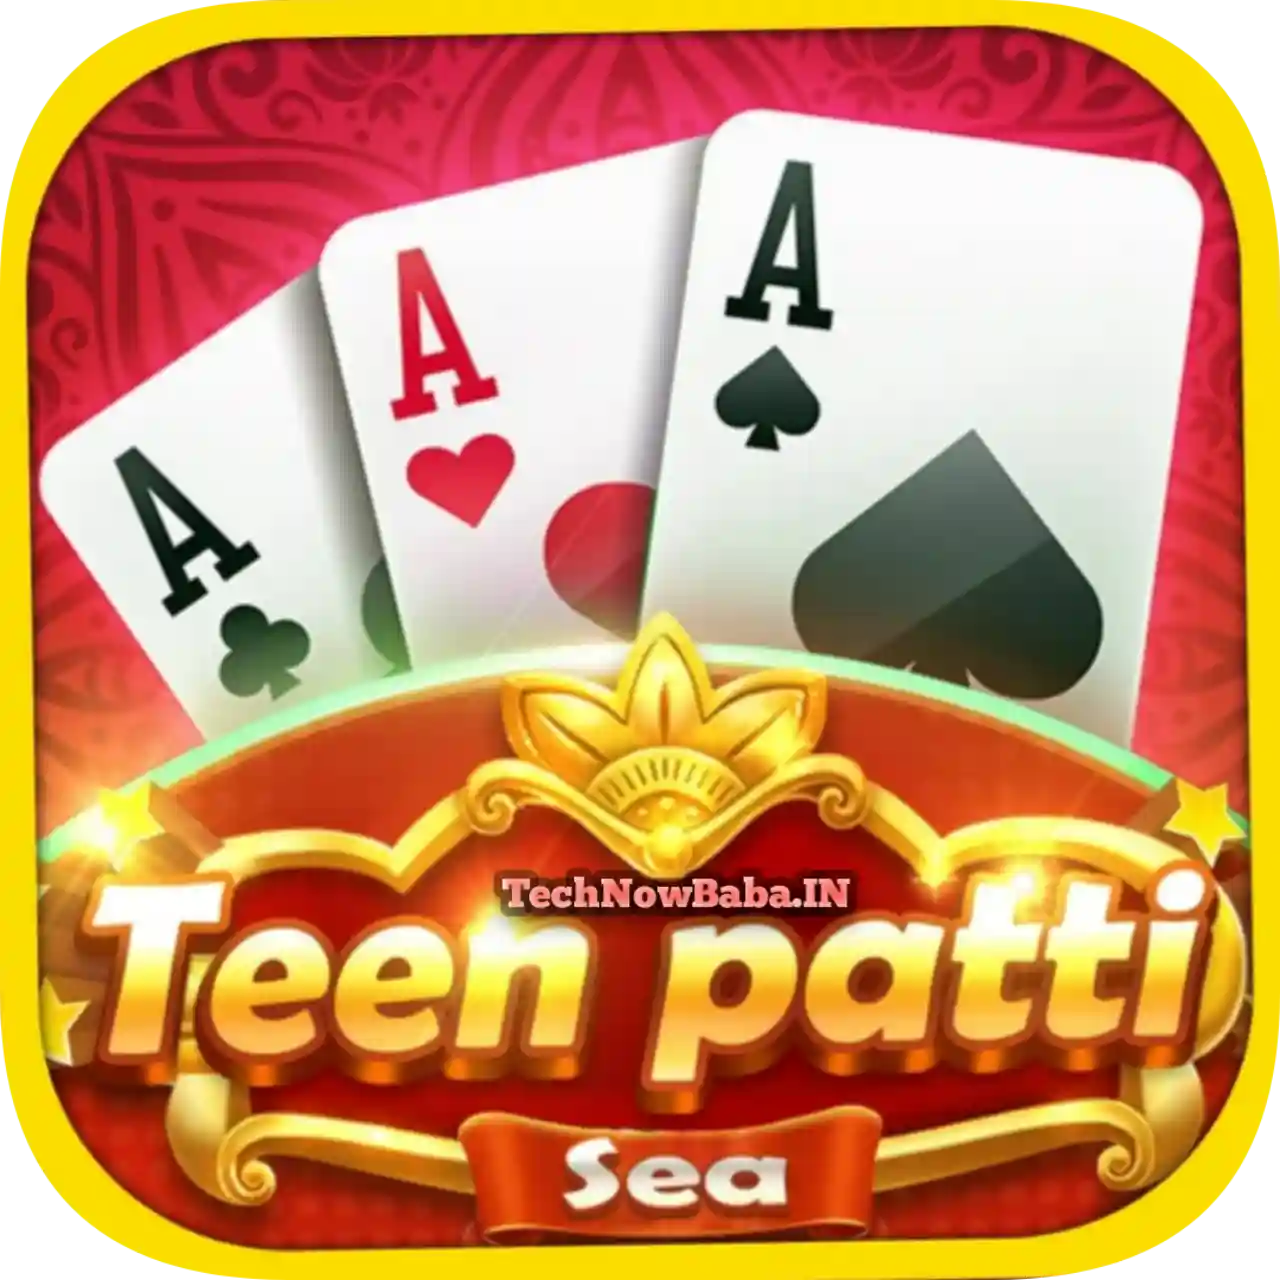 Teen Patti Sea App Download All Teen Patti Apps List - Teen Patti Rich App Download